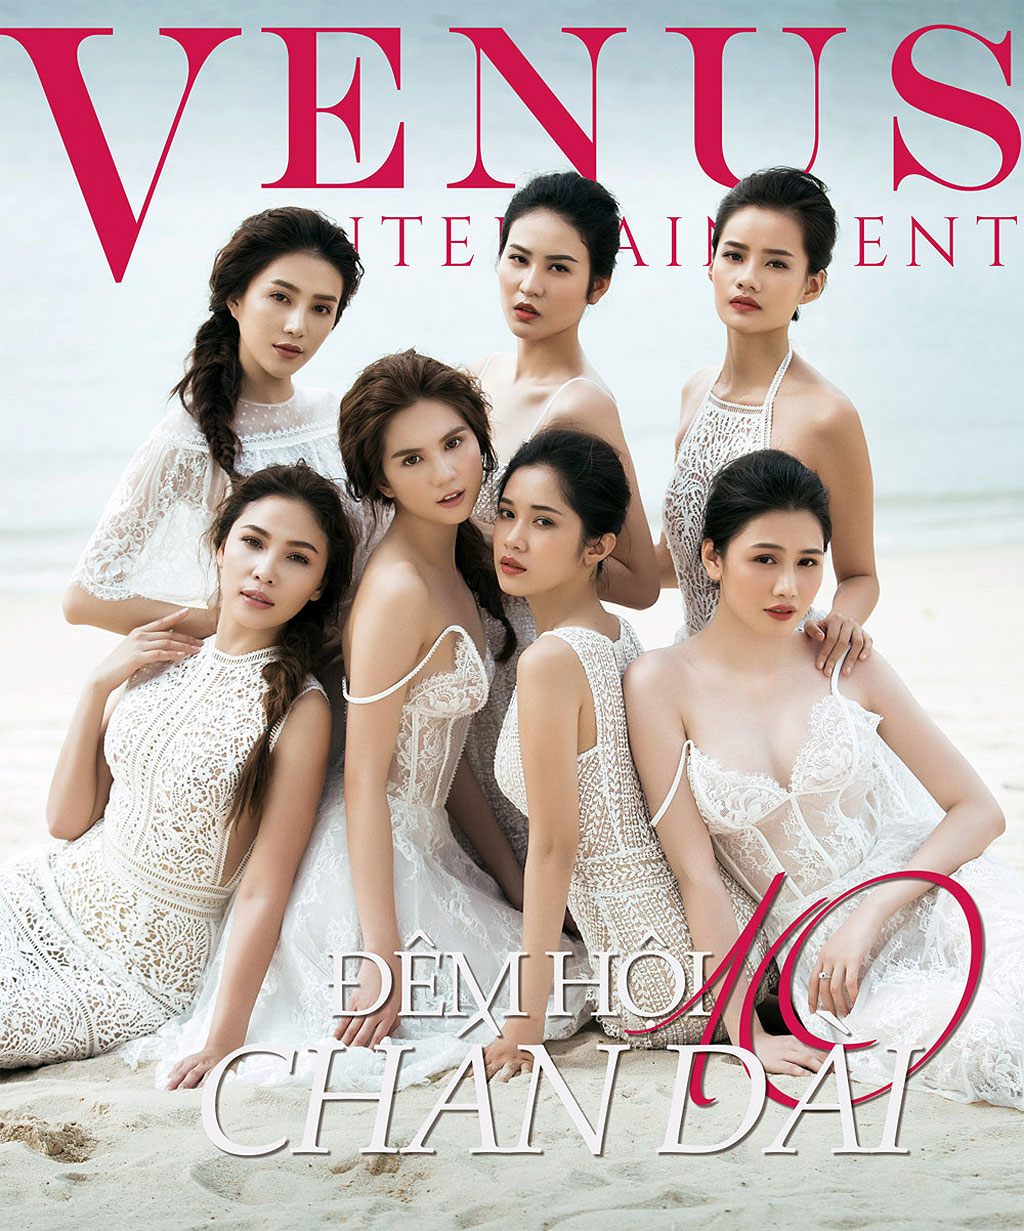 Thiệp mời ‘Đêm hội chân dài 10’ đạo trang bìa Victoria’s Secret? - ảnh 2